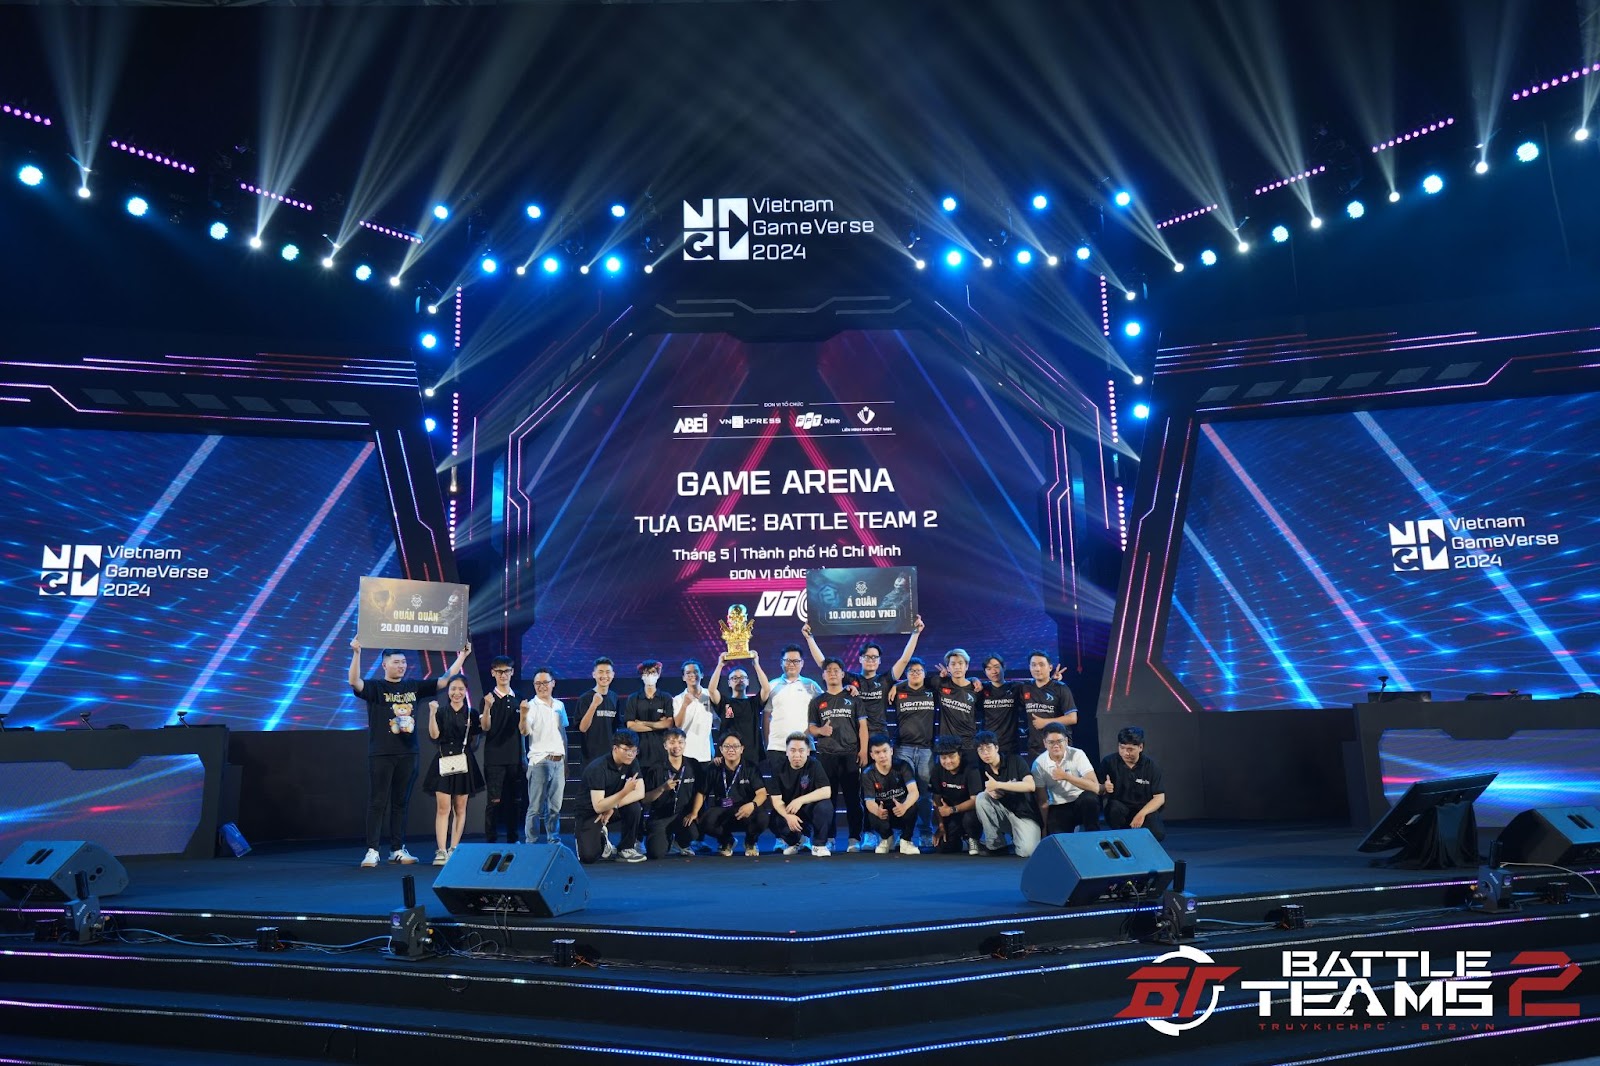 Trận chung kết tổng giải đấu Campus Championship Summer 2024 của Battle Teams 2 (Truy Kích PC) trên sân khấu lớn Vietnam GameVerse 2024.